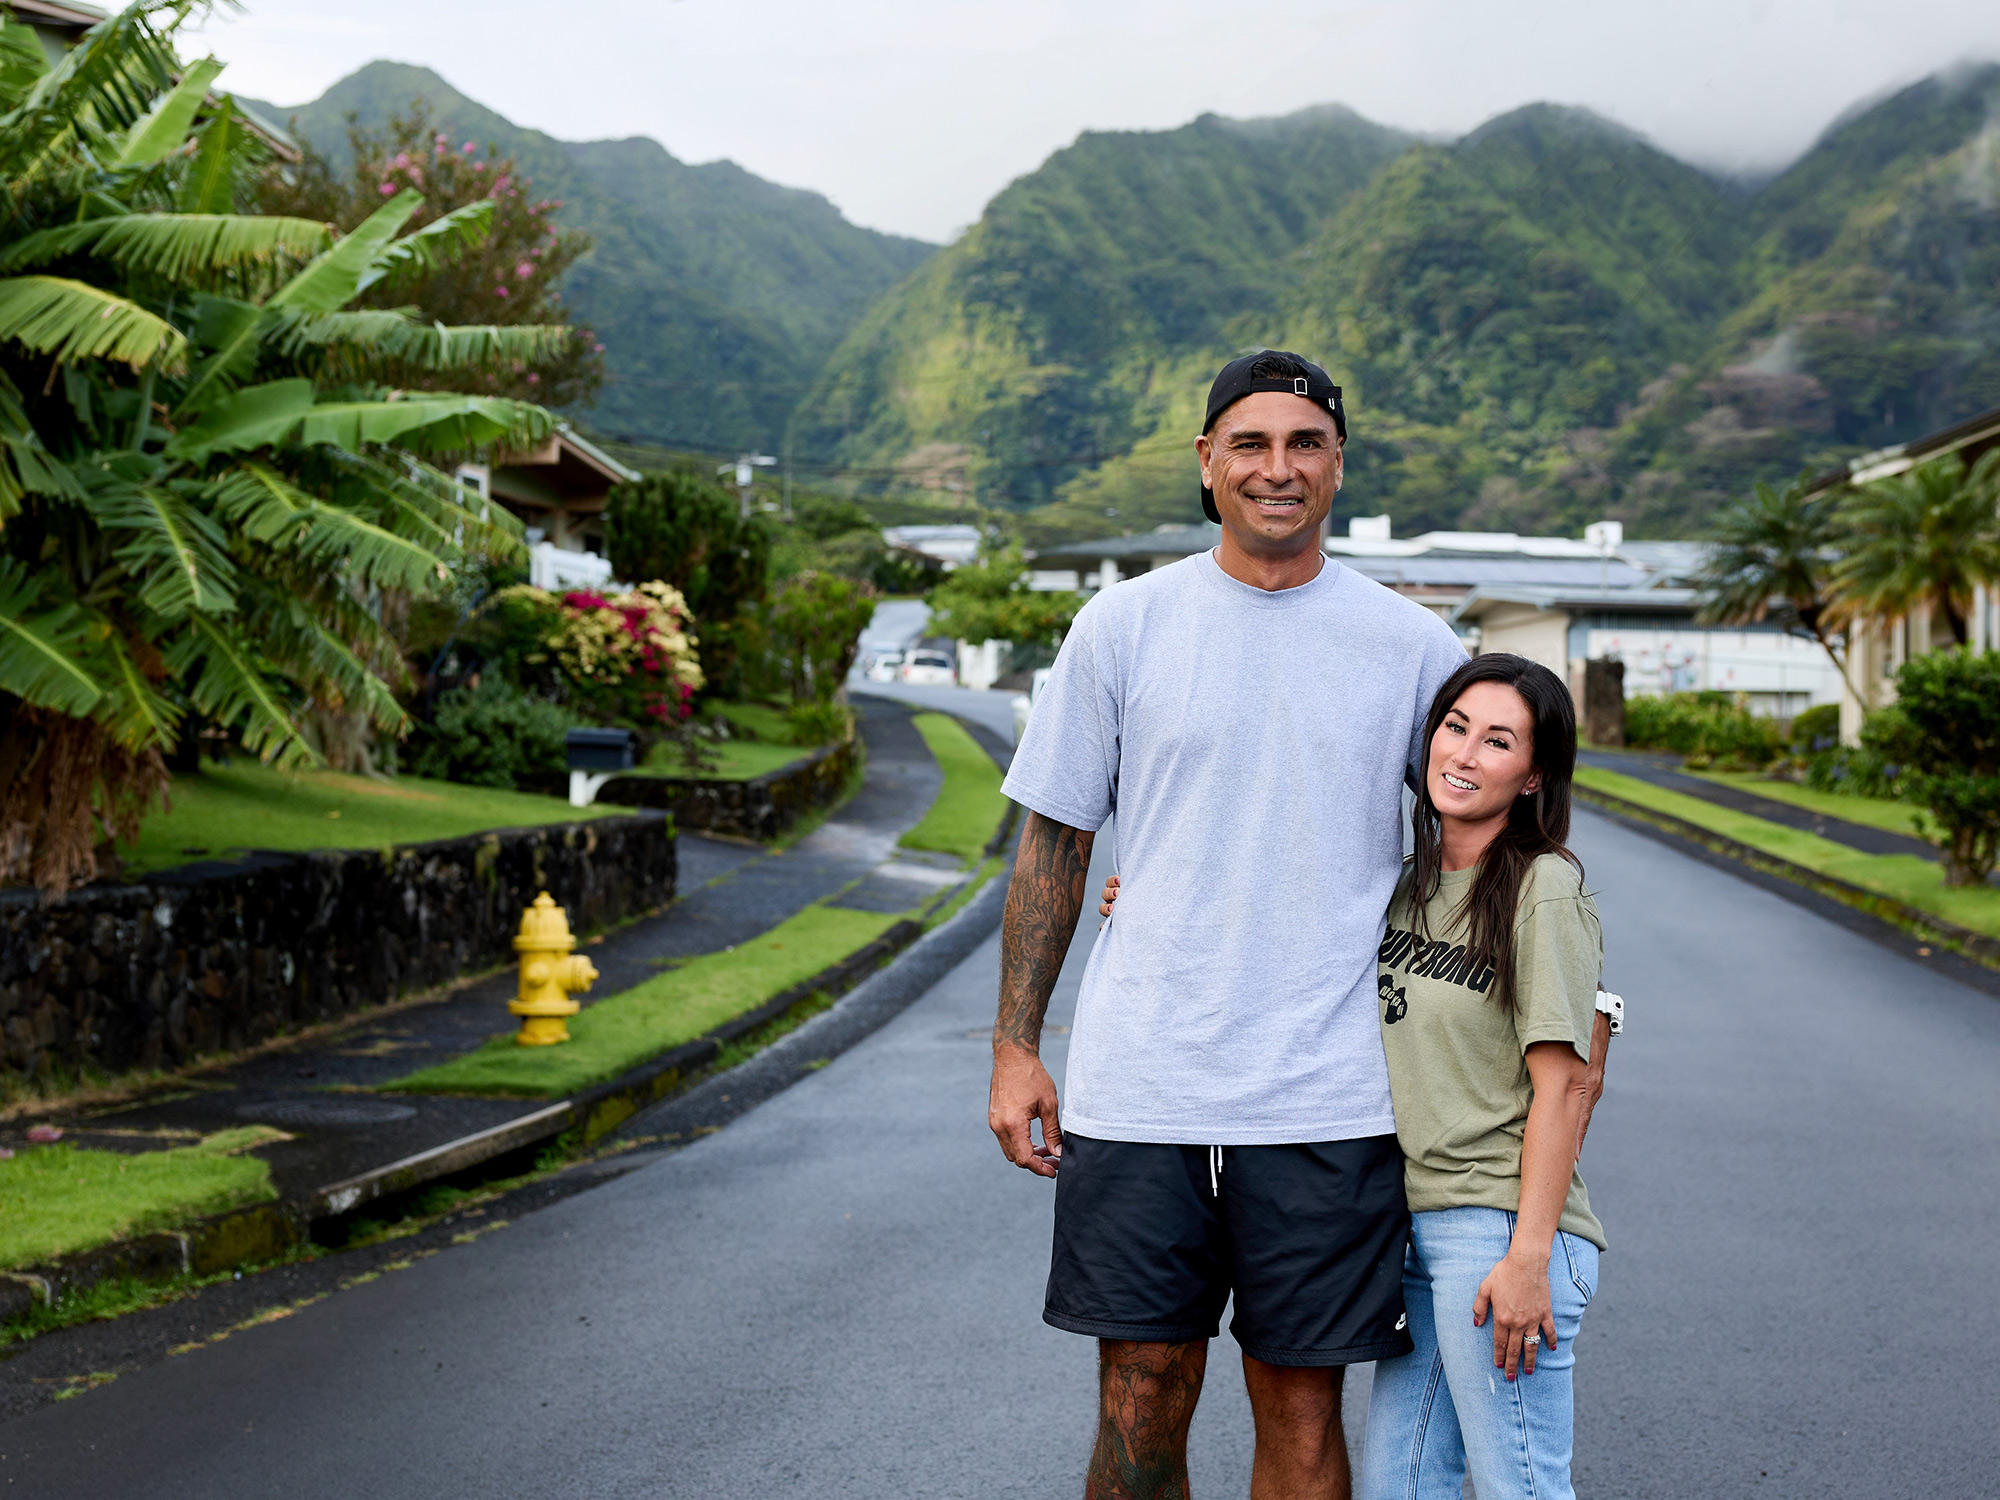 HGTV's Sunny New Show 'Renovation Aloha' Features Stunning Hawaiian Home Renovations